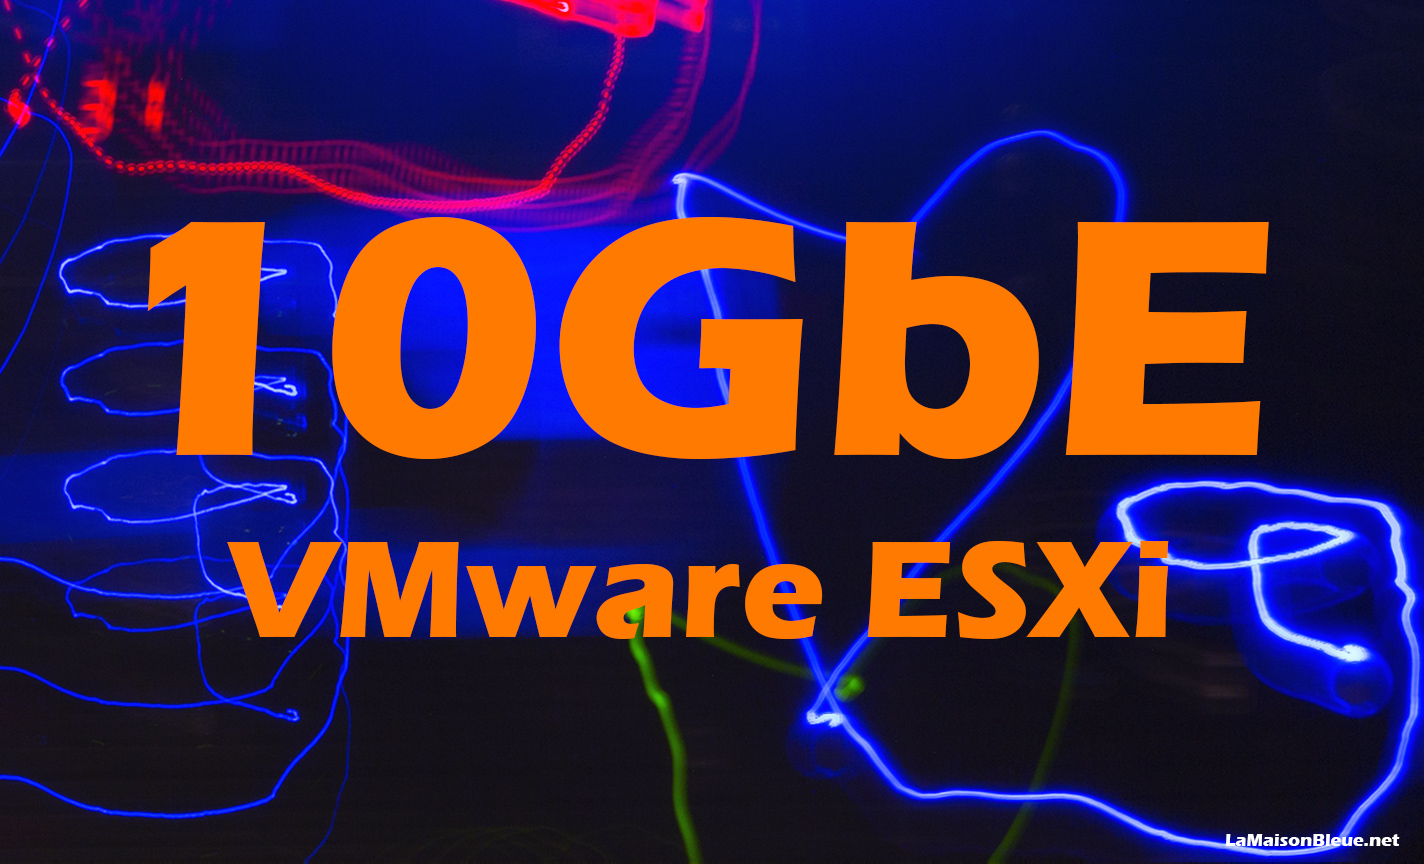 10 GbE – VMware ESXi